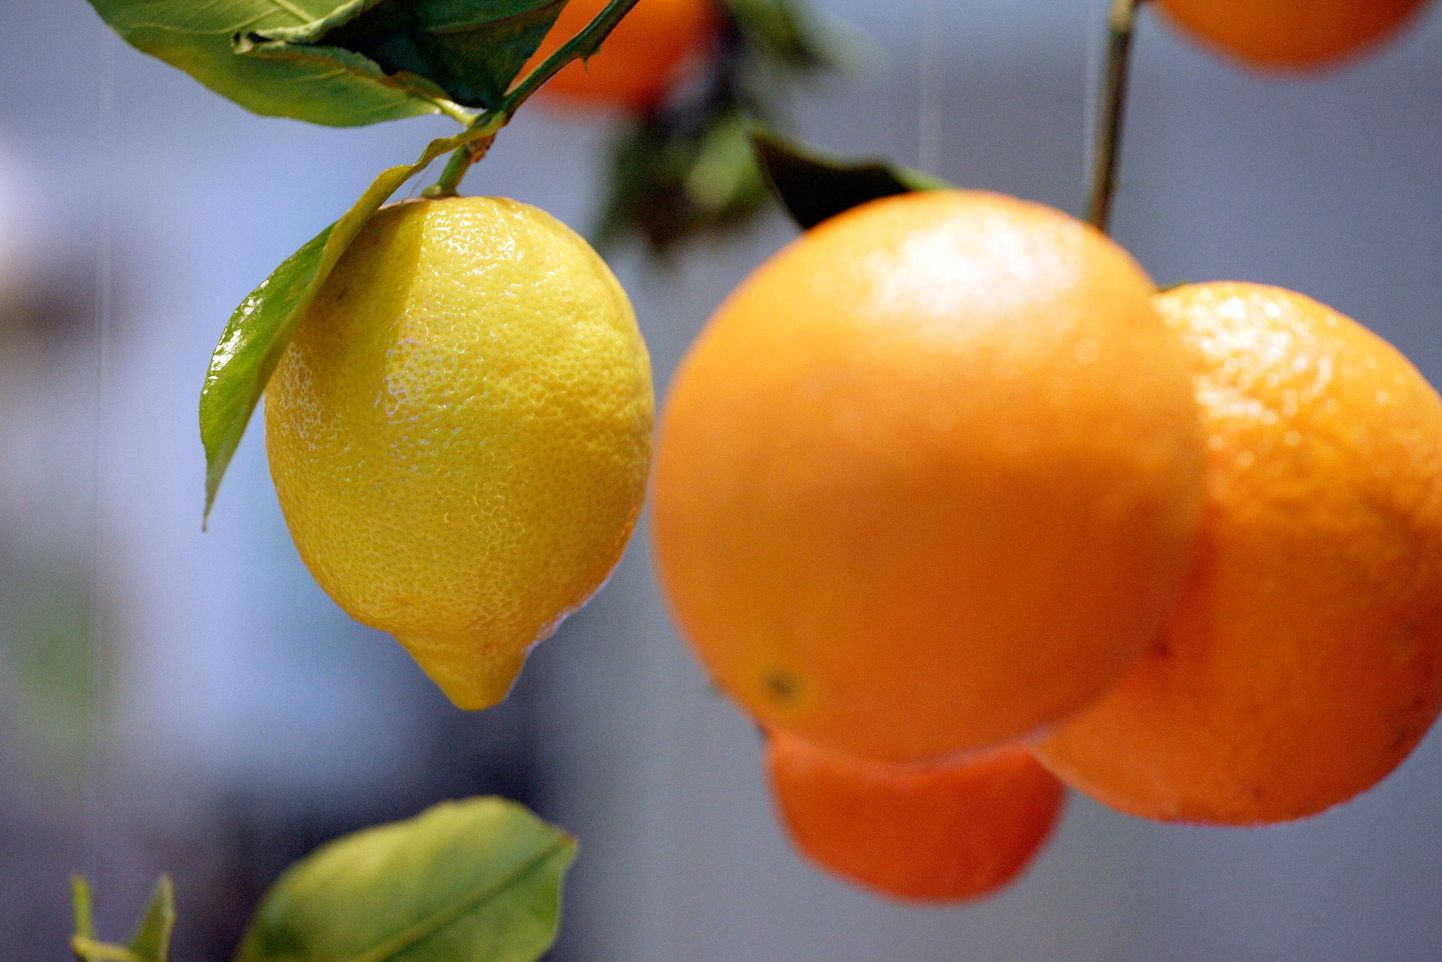 Hispaaniasse apelsine korjama läinud lõunanaabrid jäävad aina enam hätta.